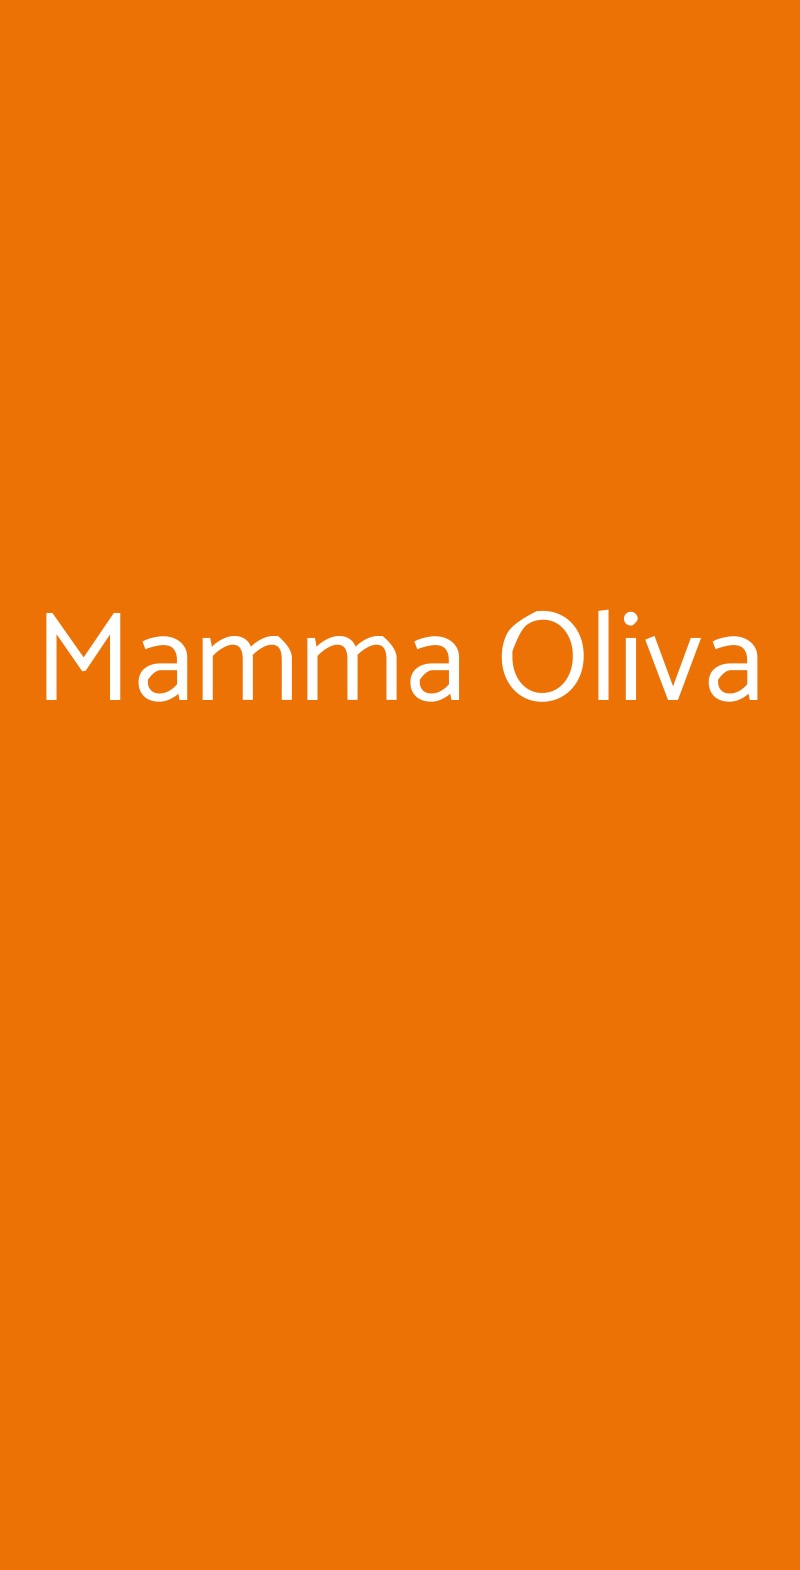 Mamma Oliva Milano menù 1 pagina